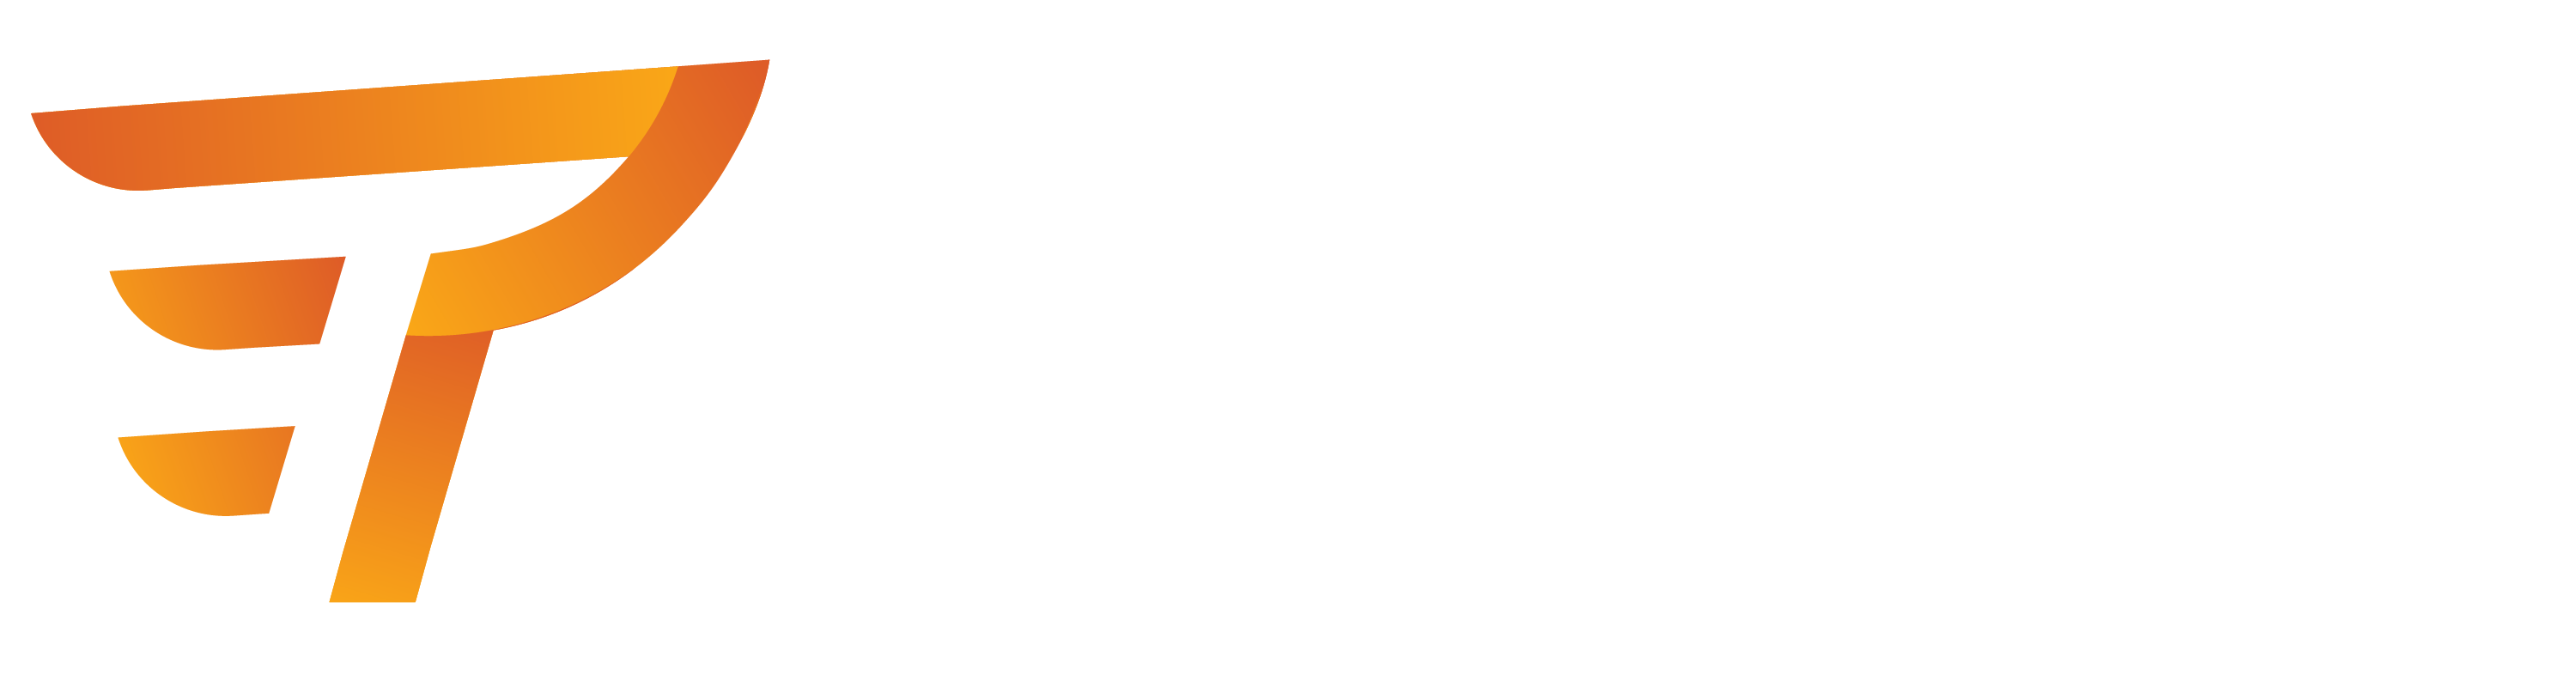 Logo PT Fitness 3k PNG white